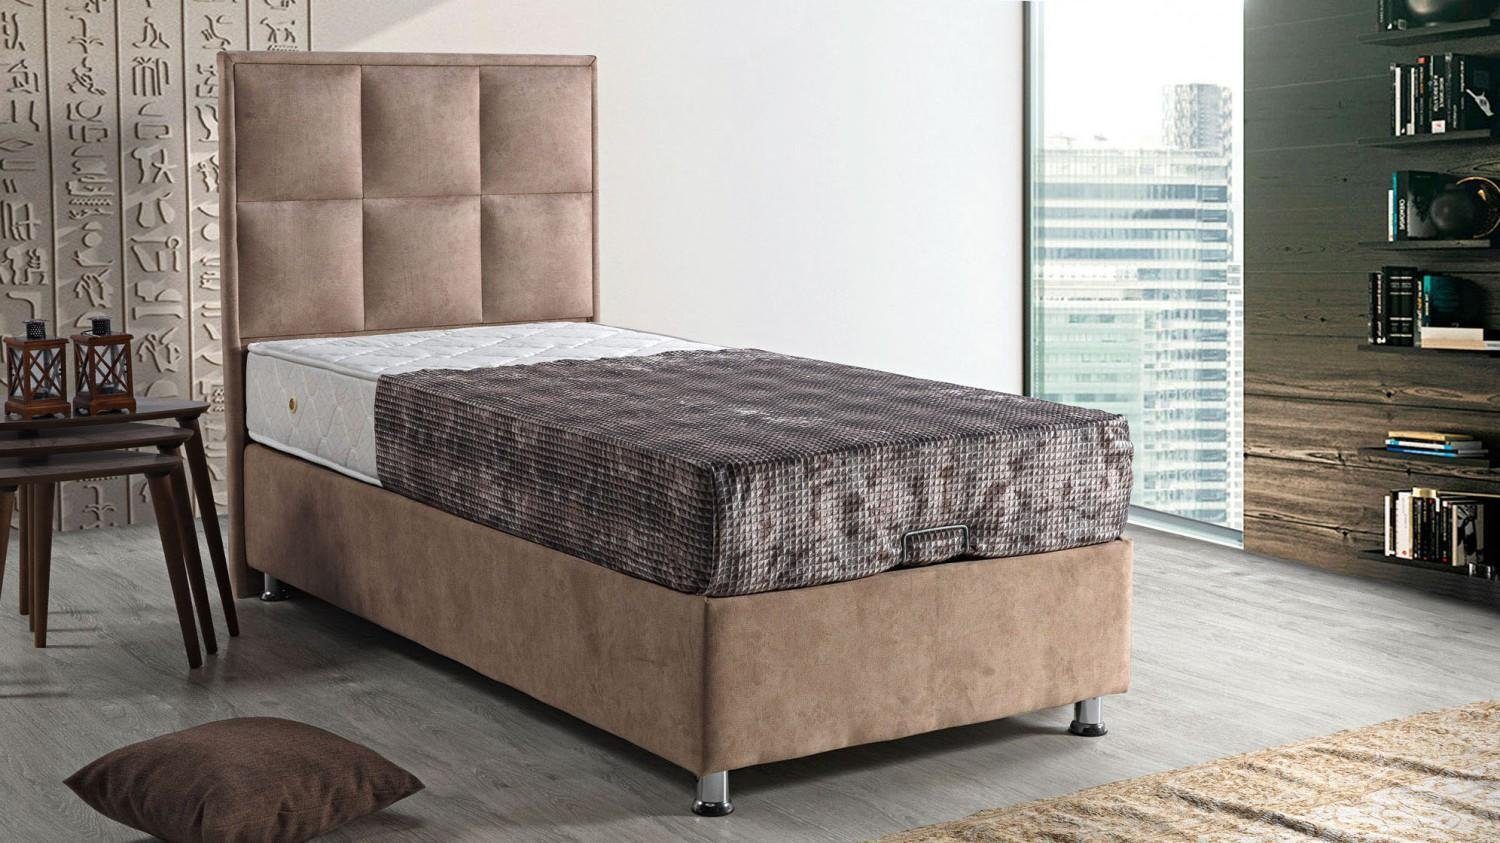 JVmoebel Bett Bett Design Polster Schlafzimmer (Bett), Europe Modern 90x190 Betten Luxus Möbel In Made